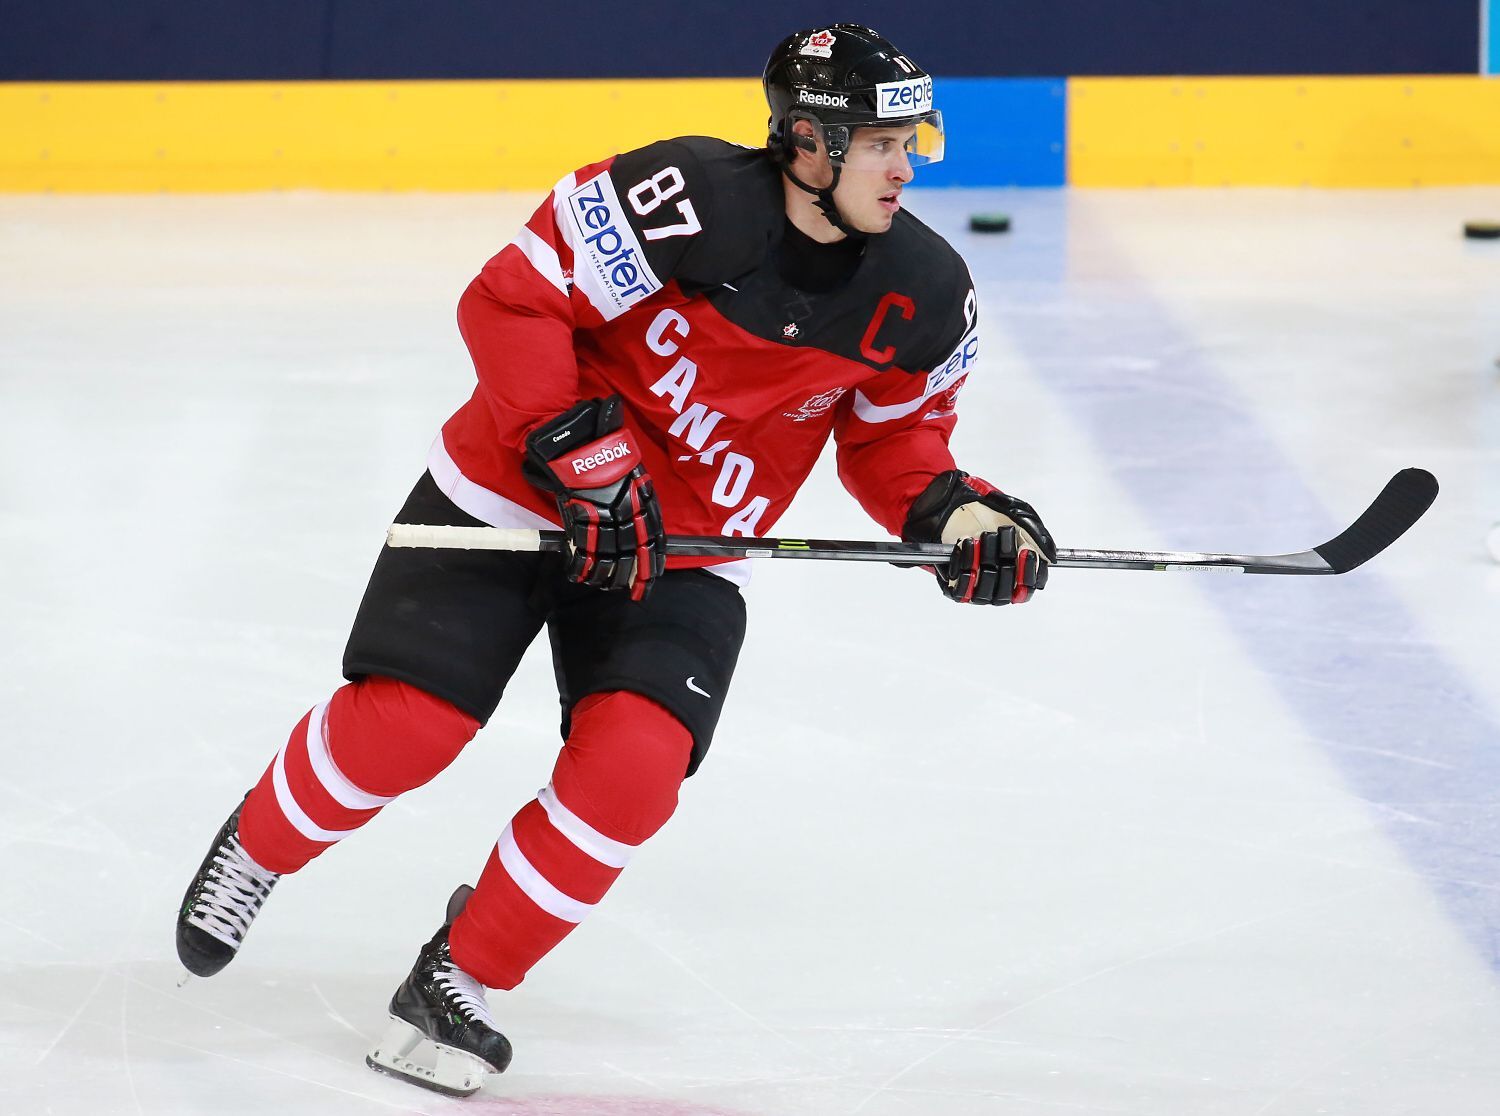 MS 2015, Švédsko - Kanada: Sidney Crosby